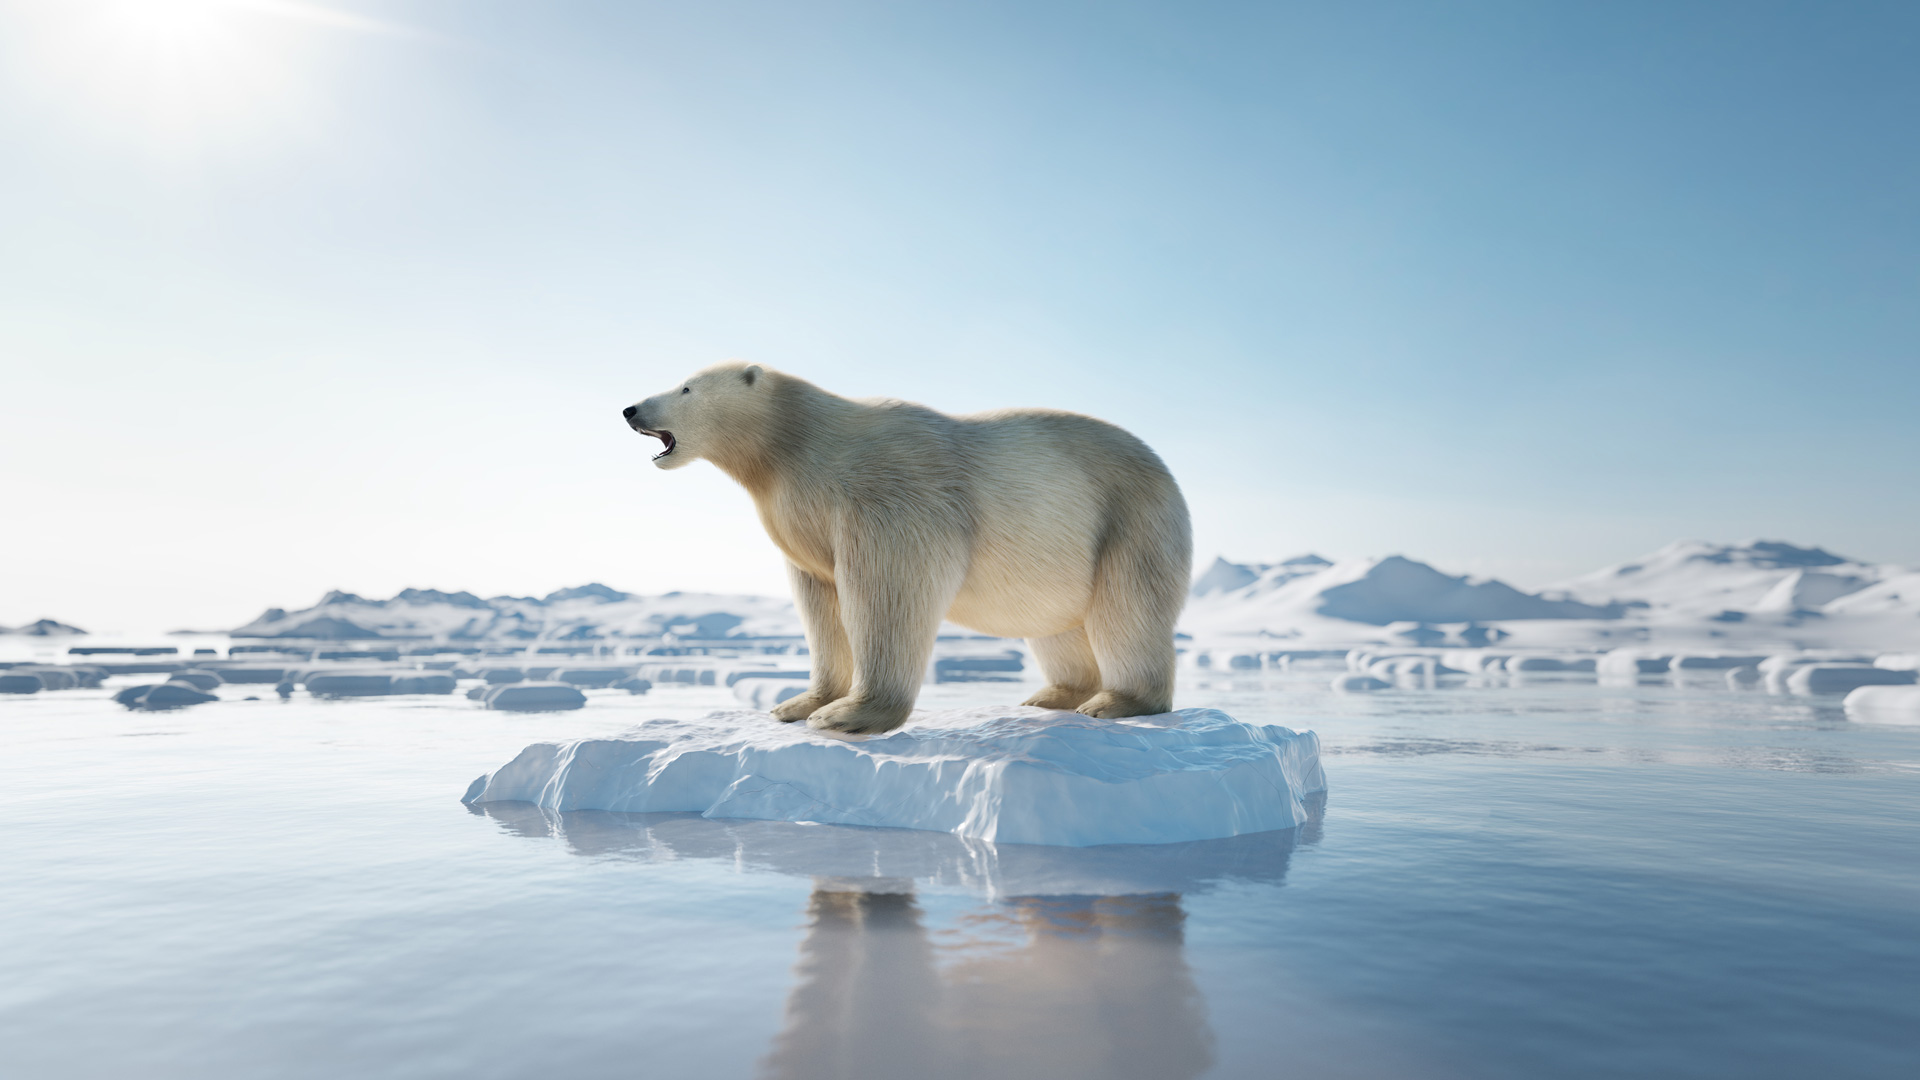 Arktis Tours - Wir haben noch Platz für Dich